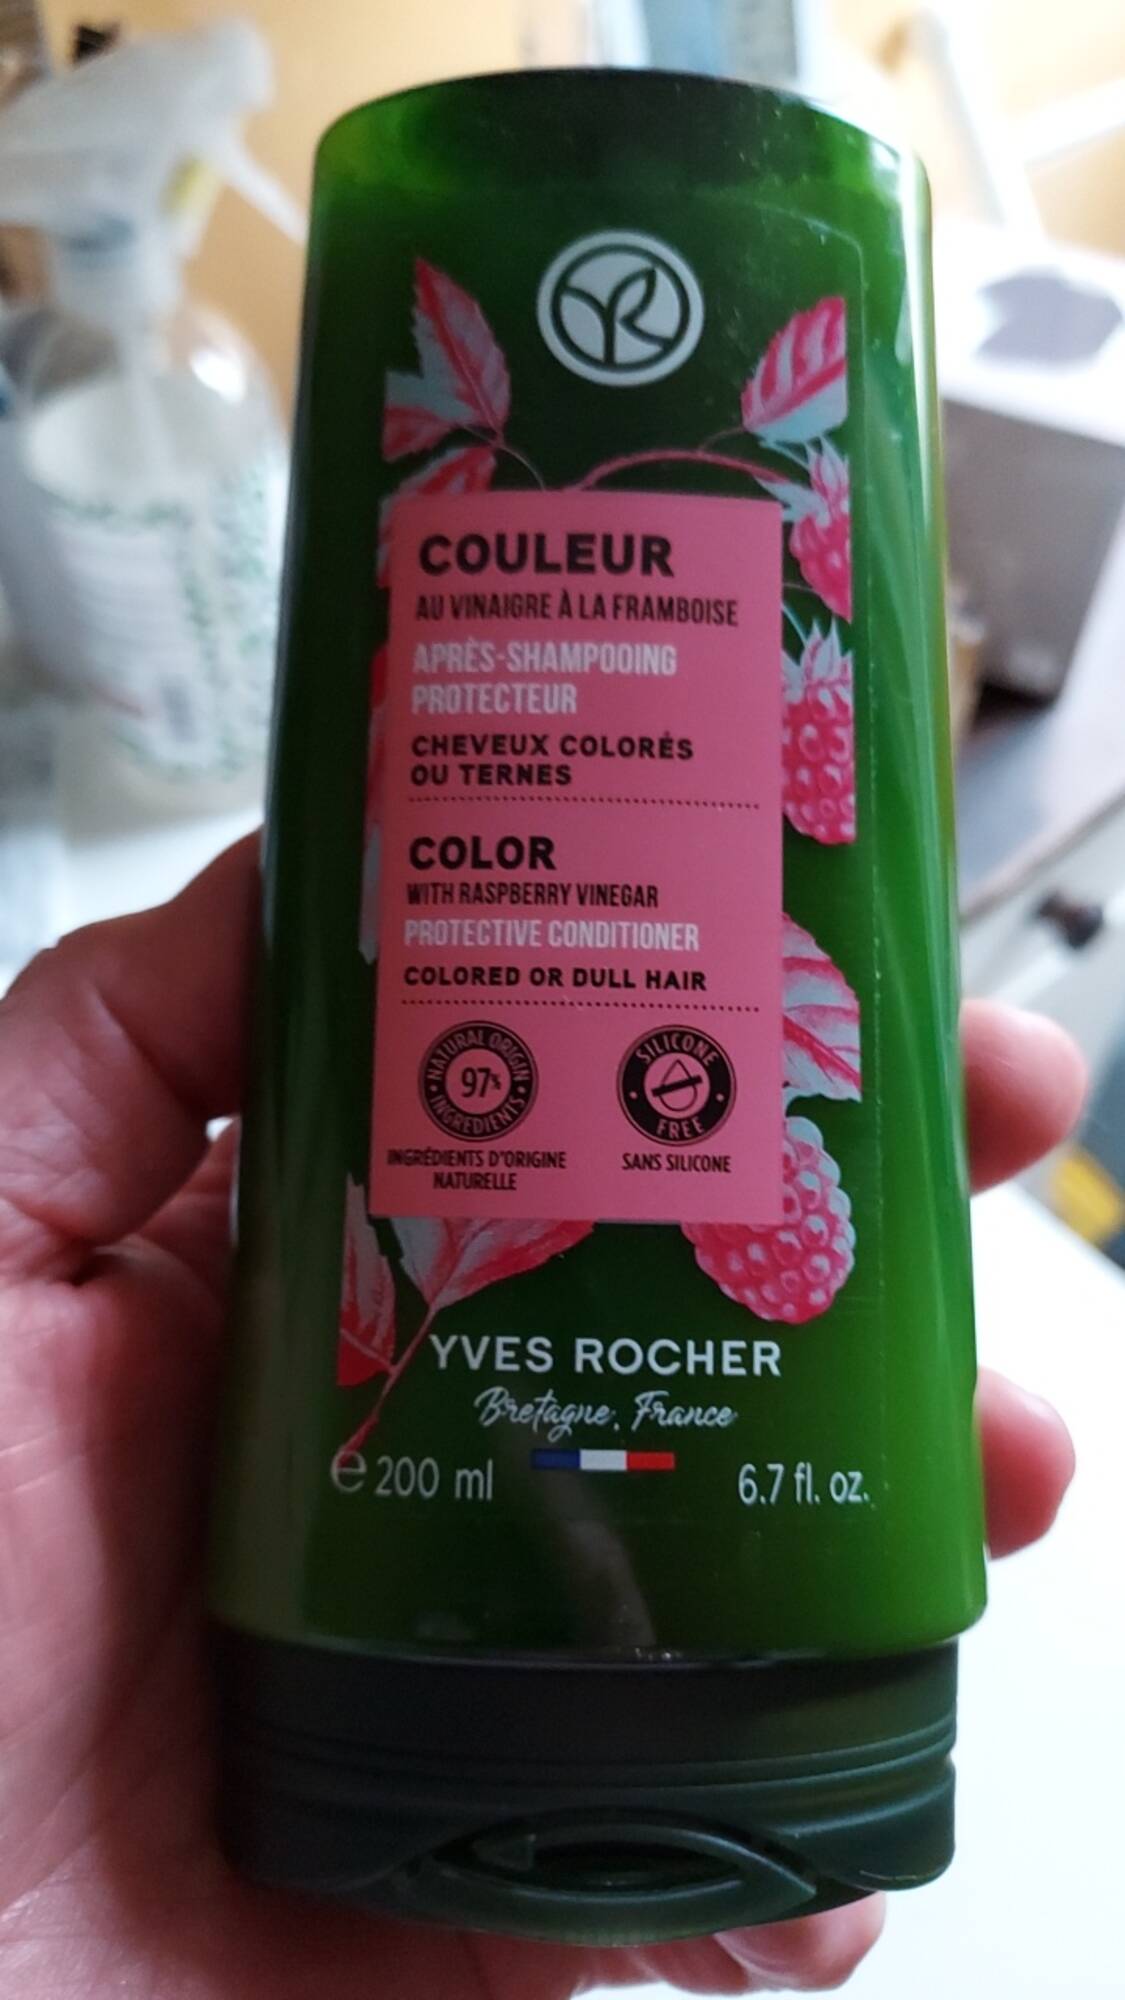 YVES ROCHER - Couleur - Après-shampoing protecteur